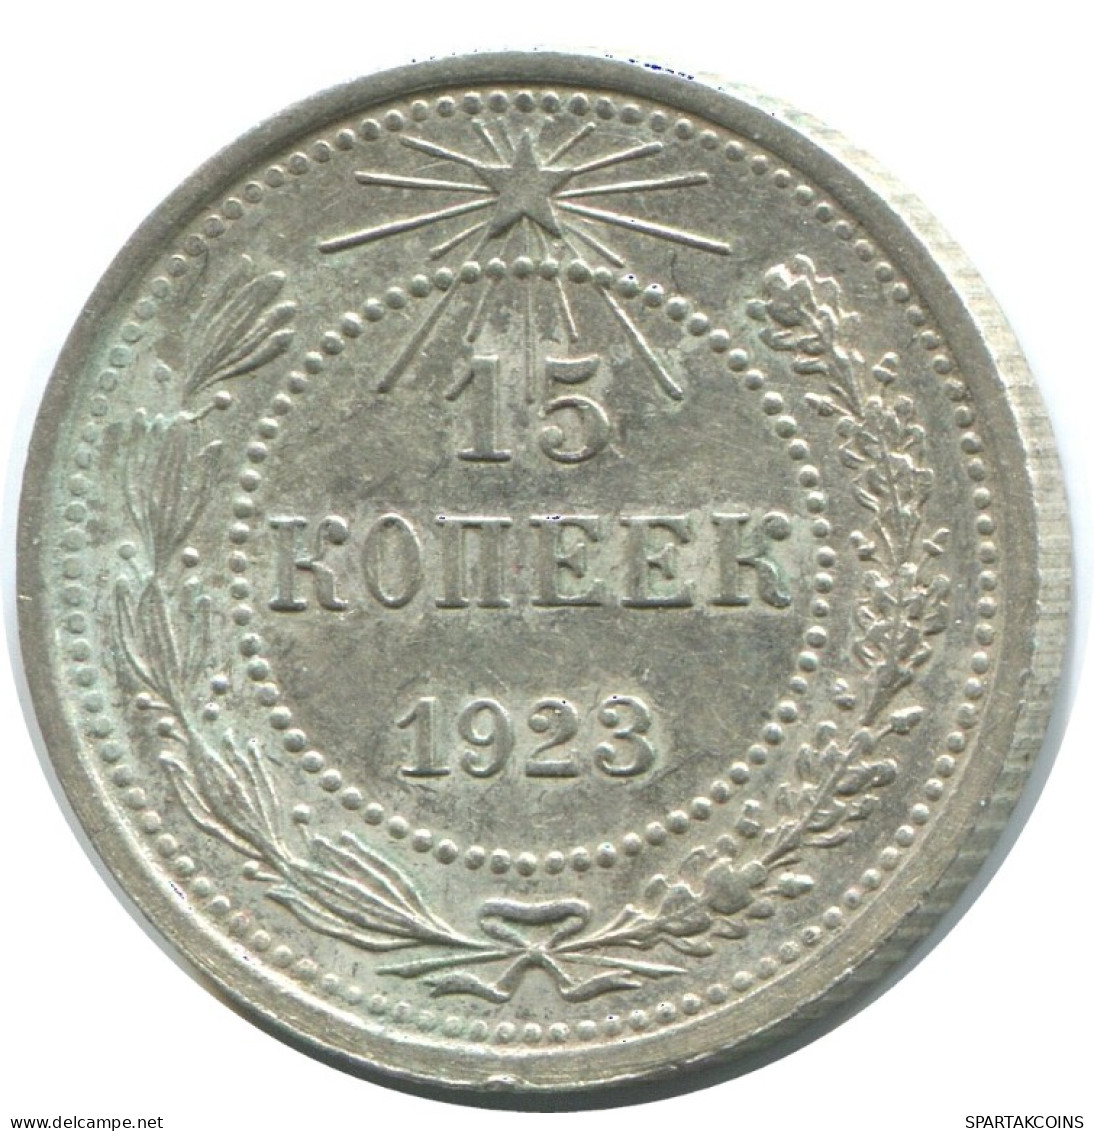 15 KOPEKS 1923 RUSSIA RSFSR SILVER Coin HIGH GRADE #AF027.4.U.A - Rusland